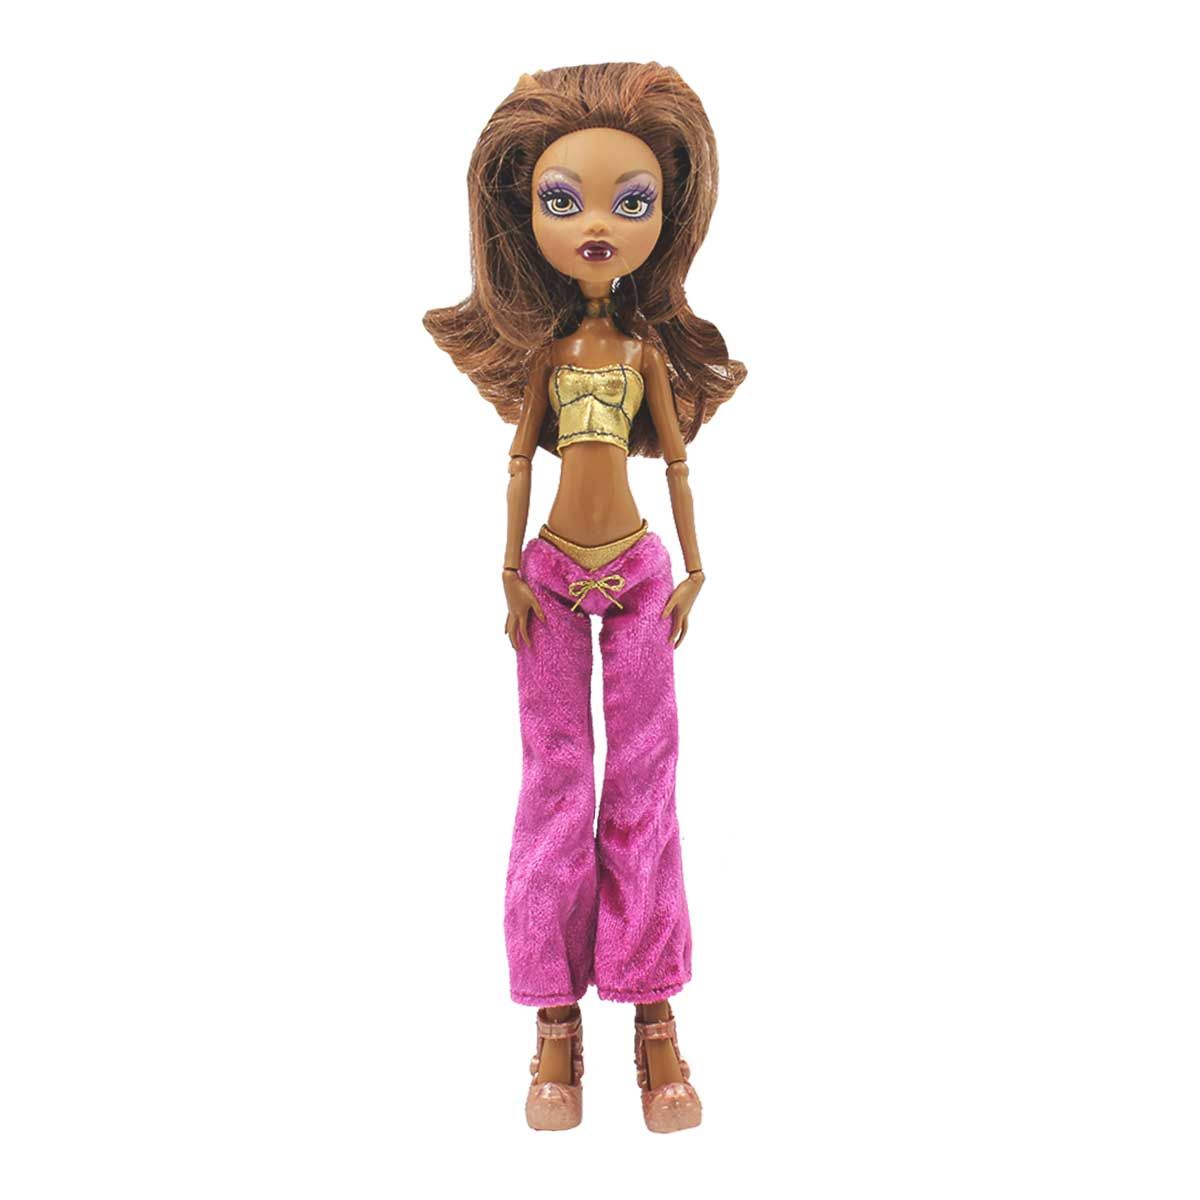 Одежда Dolls Accessories для Монстер Хай и кукол 26-28 см Спорти стиль